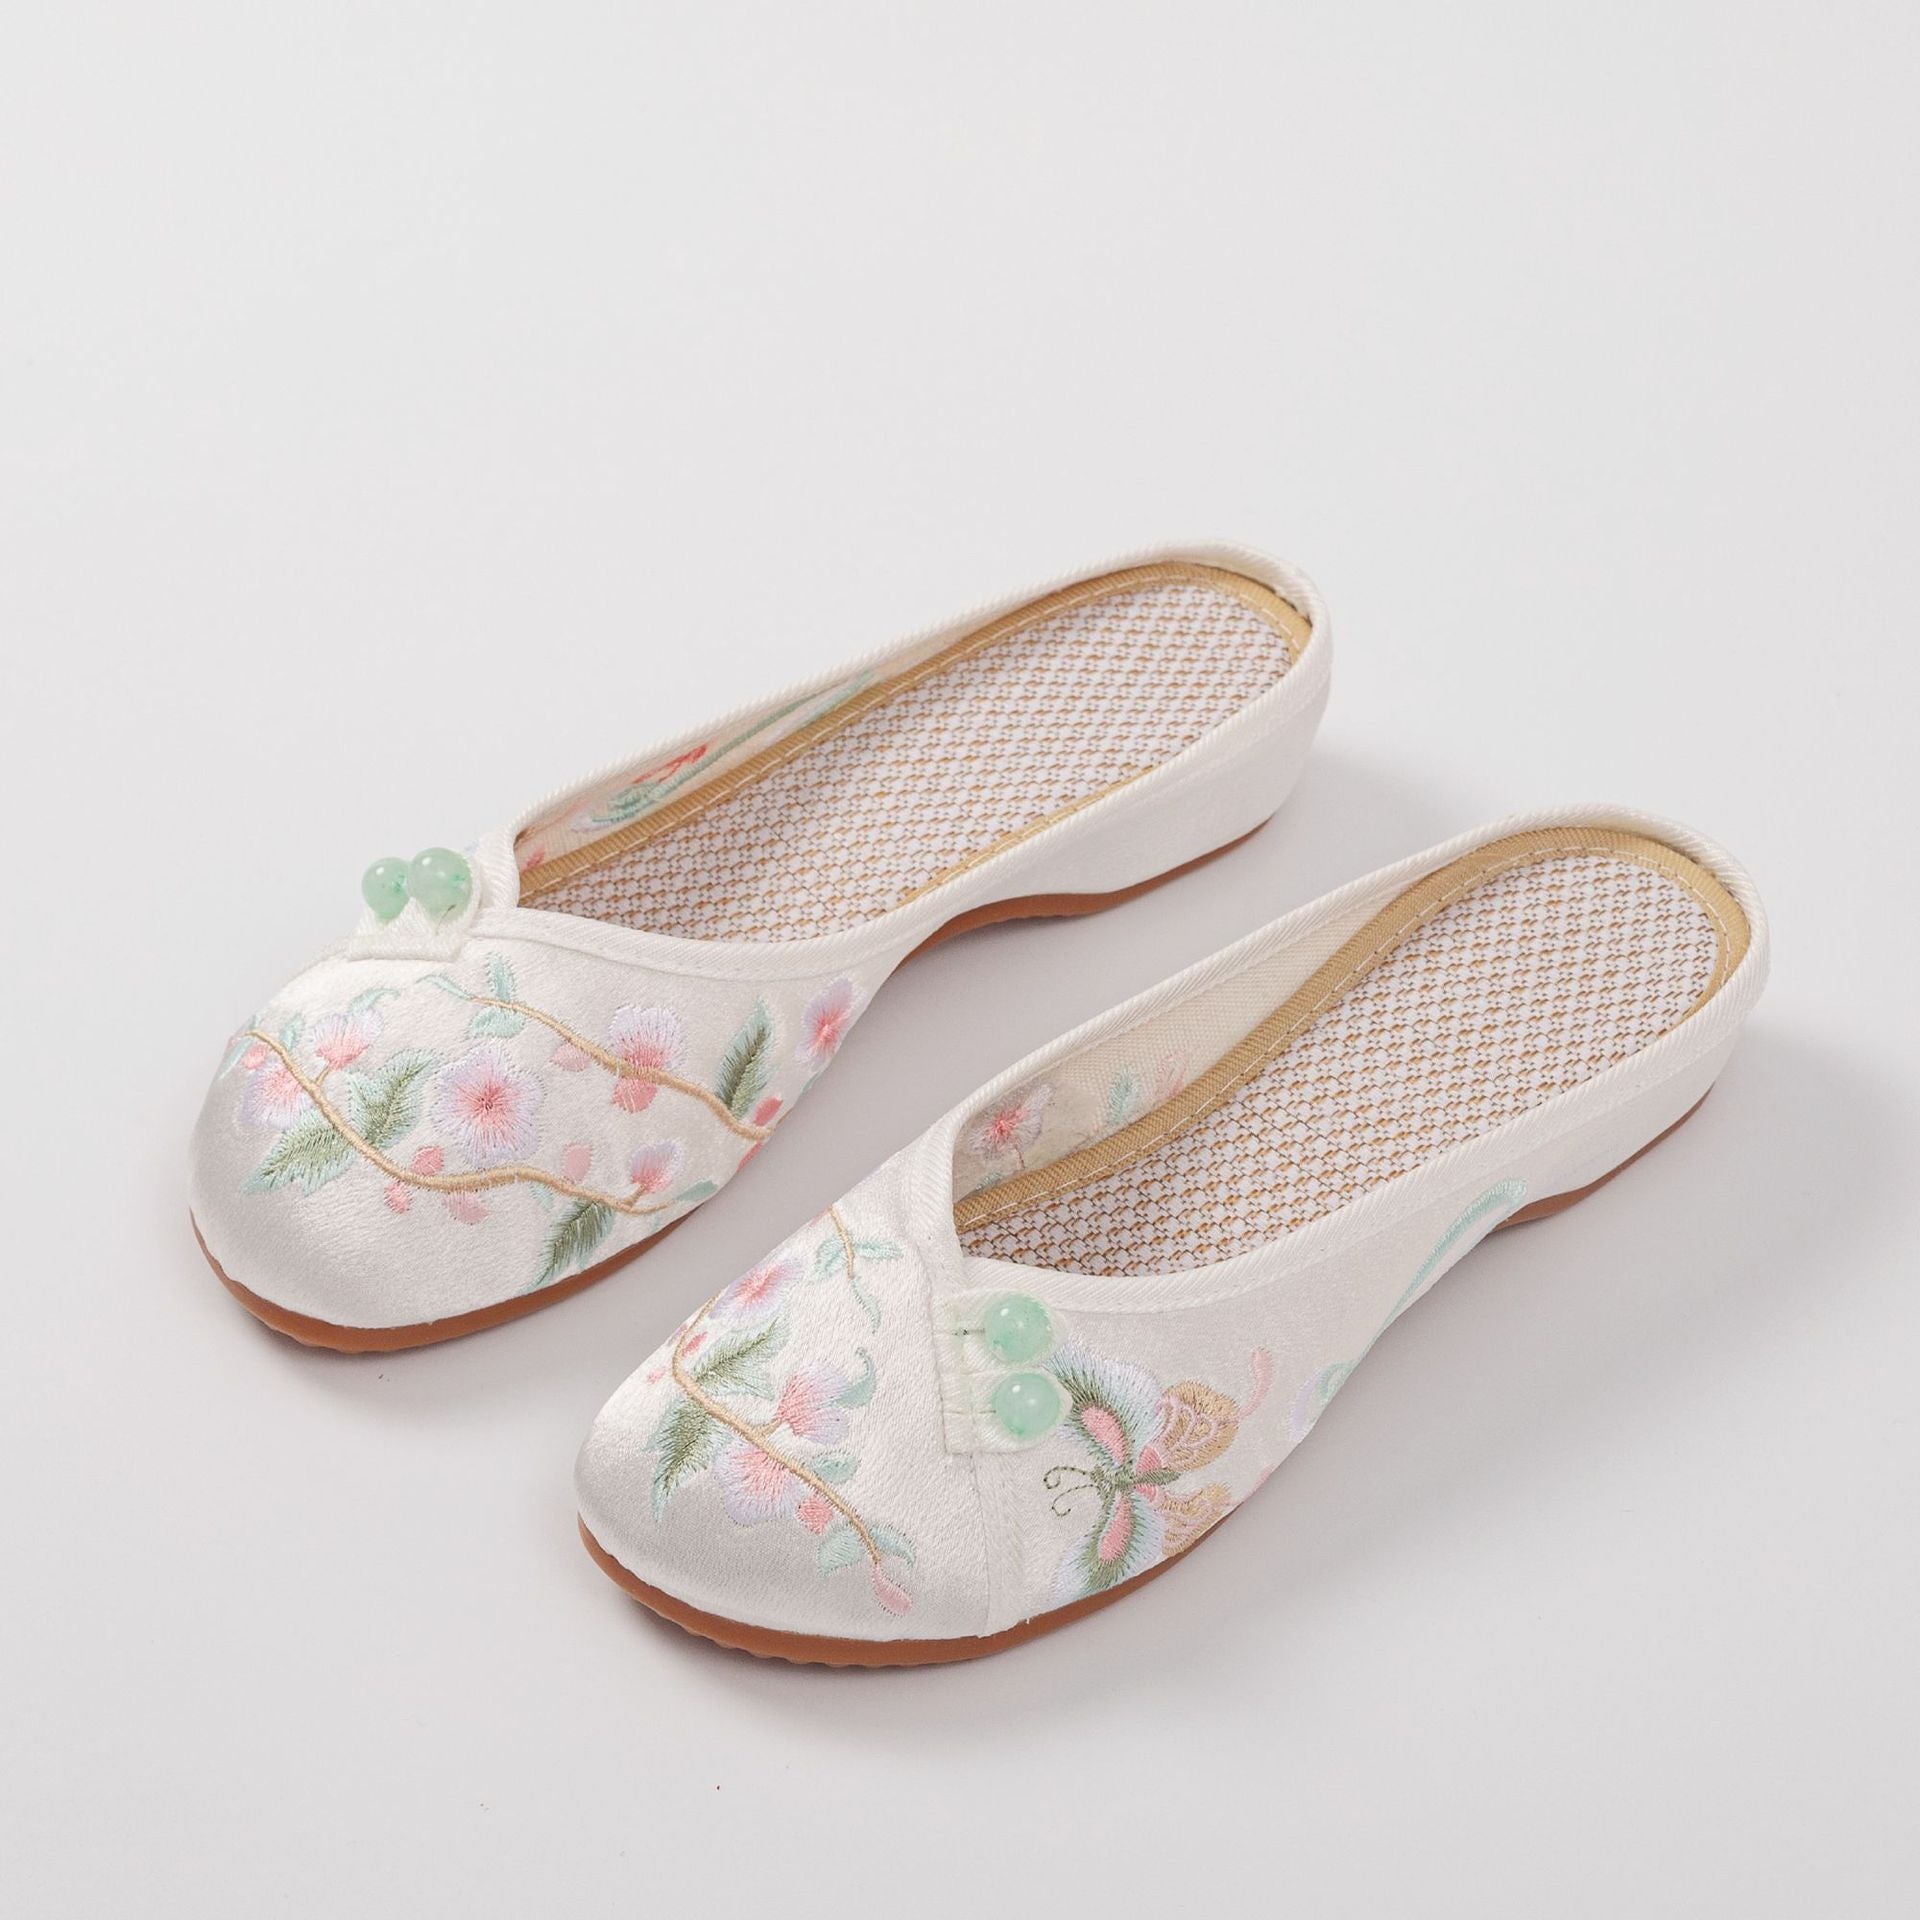 Women's Satin Retro Cheongsam Han Chinese Clothing Sandals